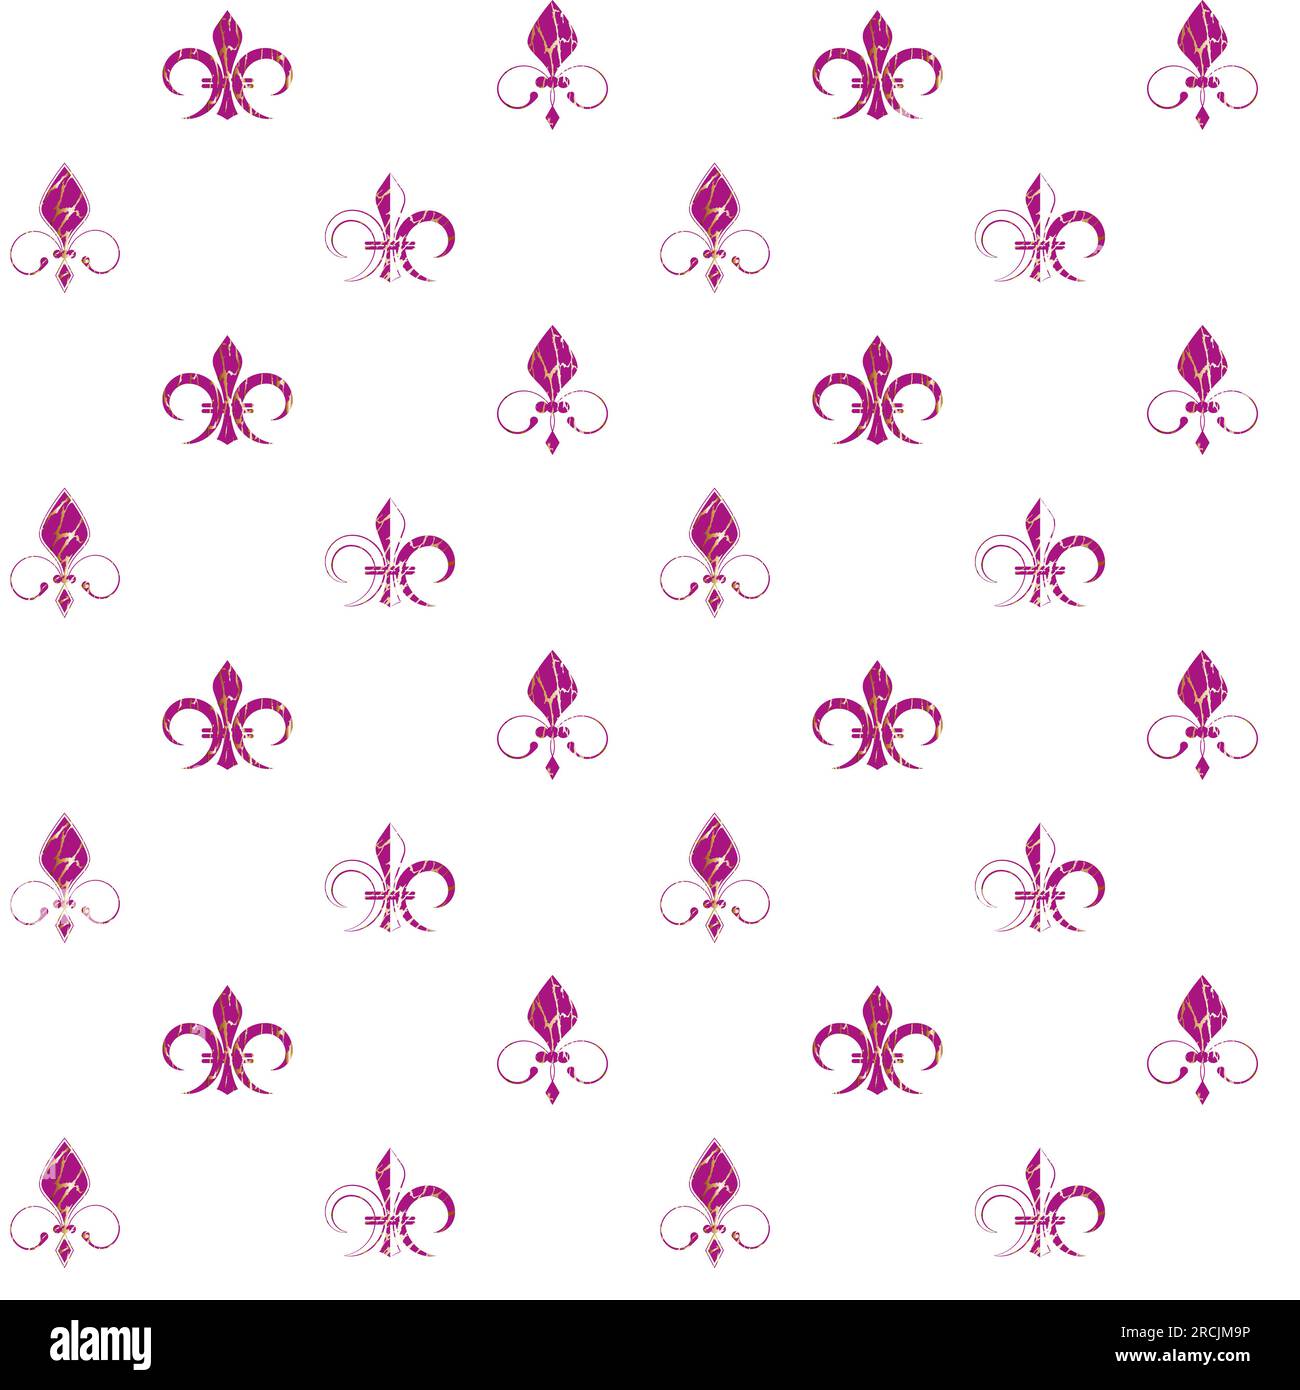 Fleur De Lis motivo senza cuciture elemento di design viola e oro illustrazione vettoriale stilizzata isolata su sfondo bianco Illustrazione Vettoriale